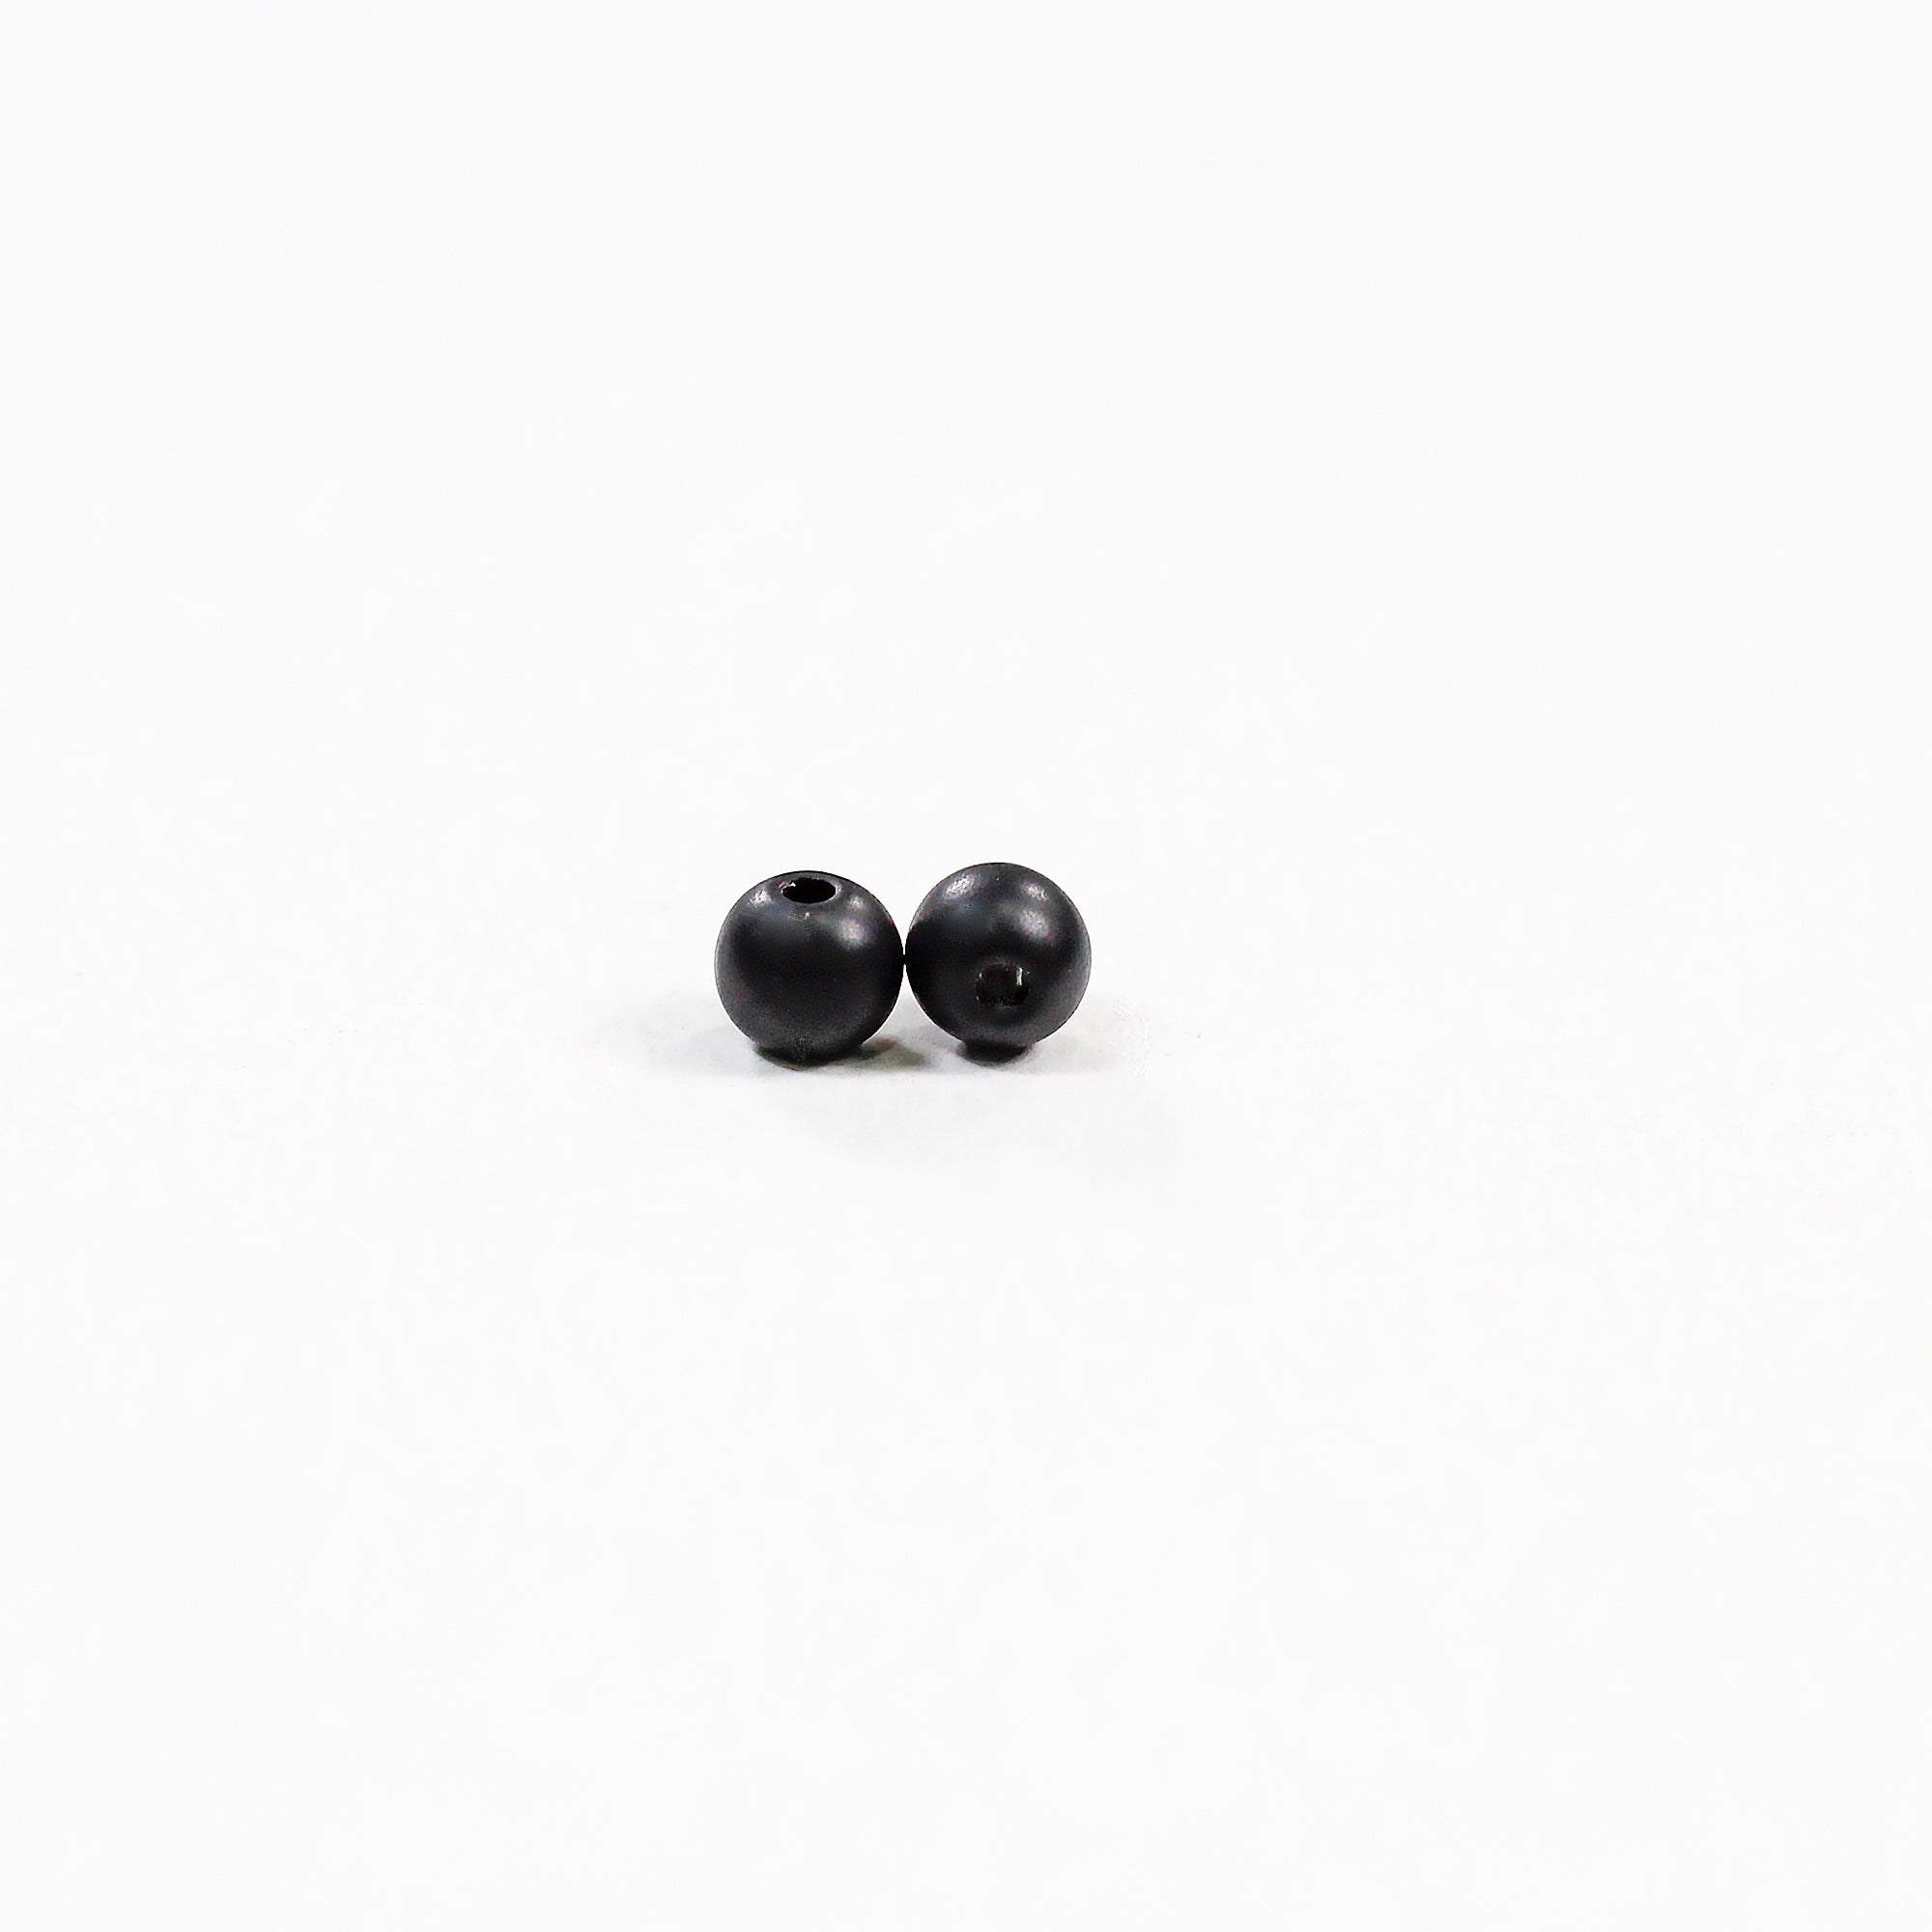 Beads Muted Black Round 4Mm X 4Mm 30G Pb Ib